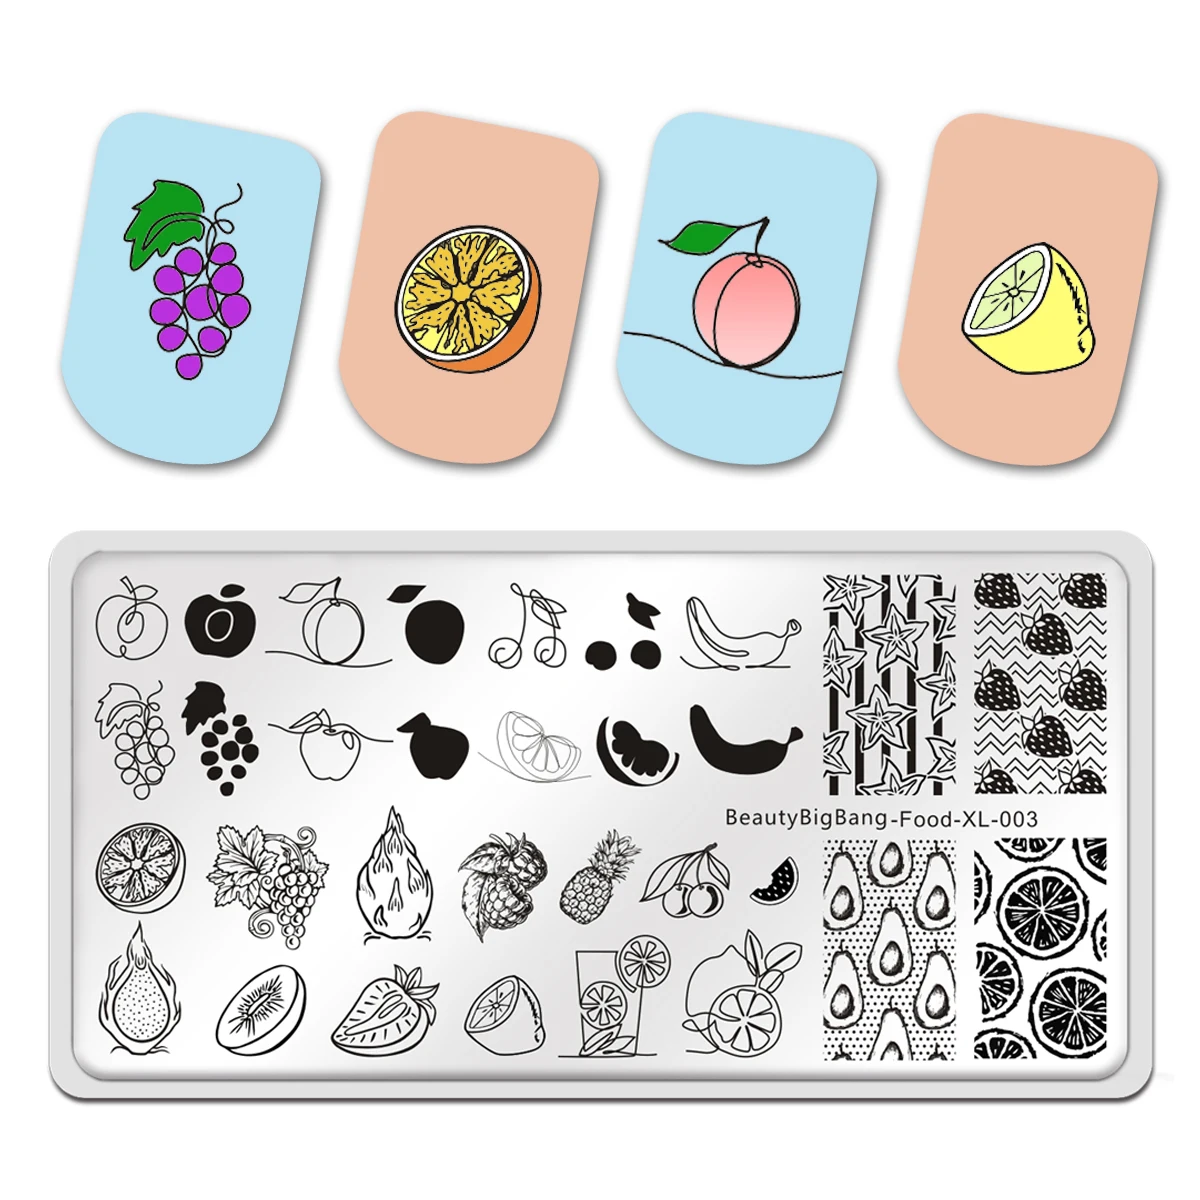 

Трафарет Beautybigbang маникюрный с шаблоном, пластина для стемпинга ногтей, еда, 003, фрукты, авокадо, банан, клубника